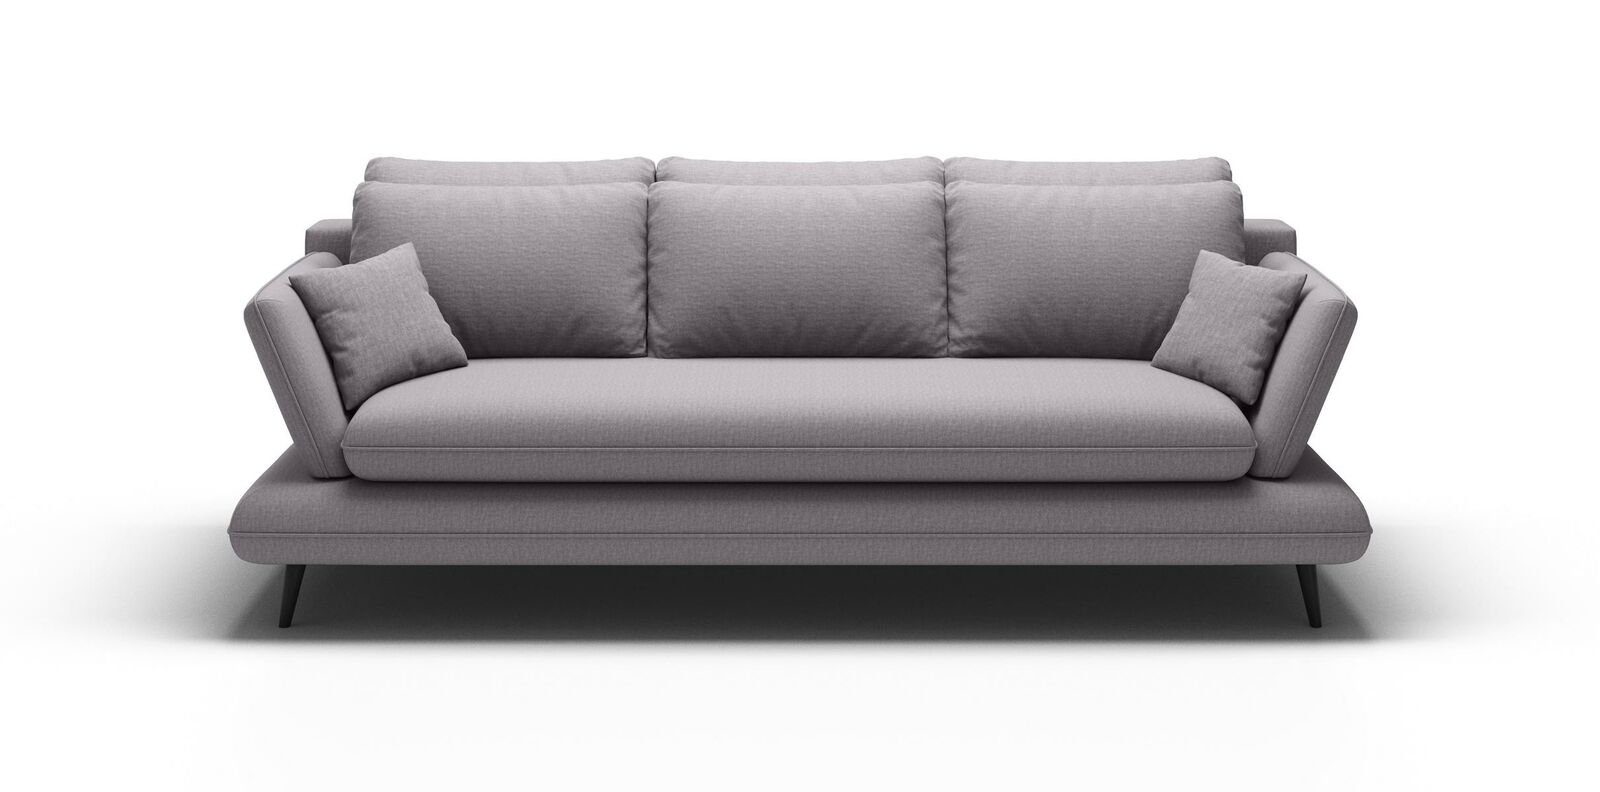 JVmoebel Chesterfield-Sofa Luxus Couch Made 3-Sitzer stilvoll in Grauer Dreisitzer Europe moderne Neu